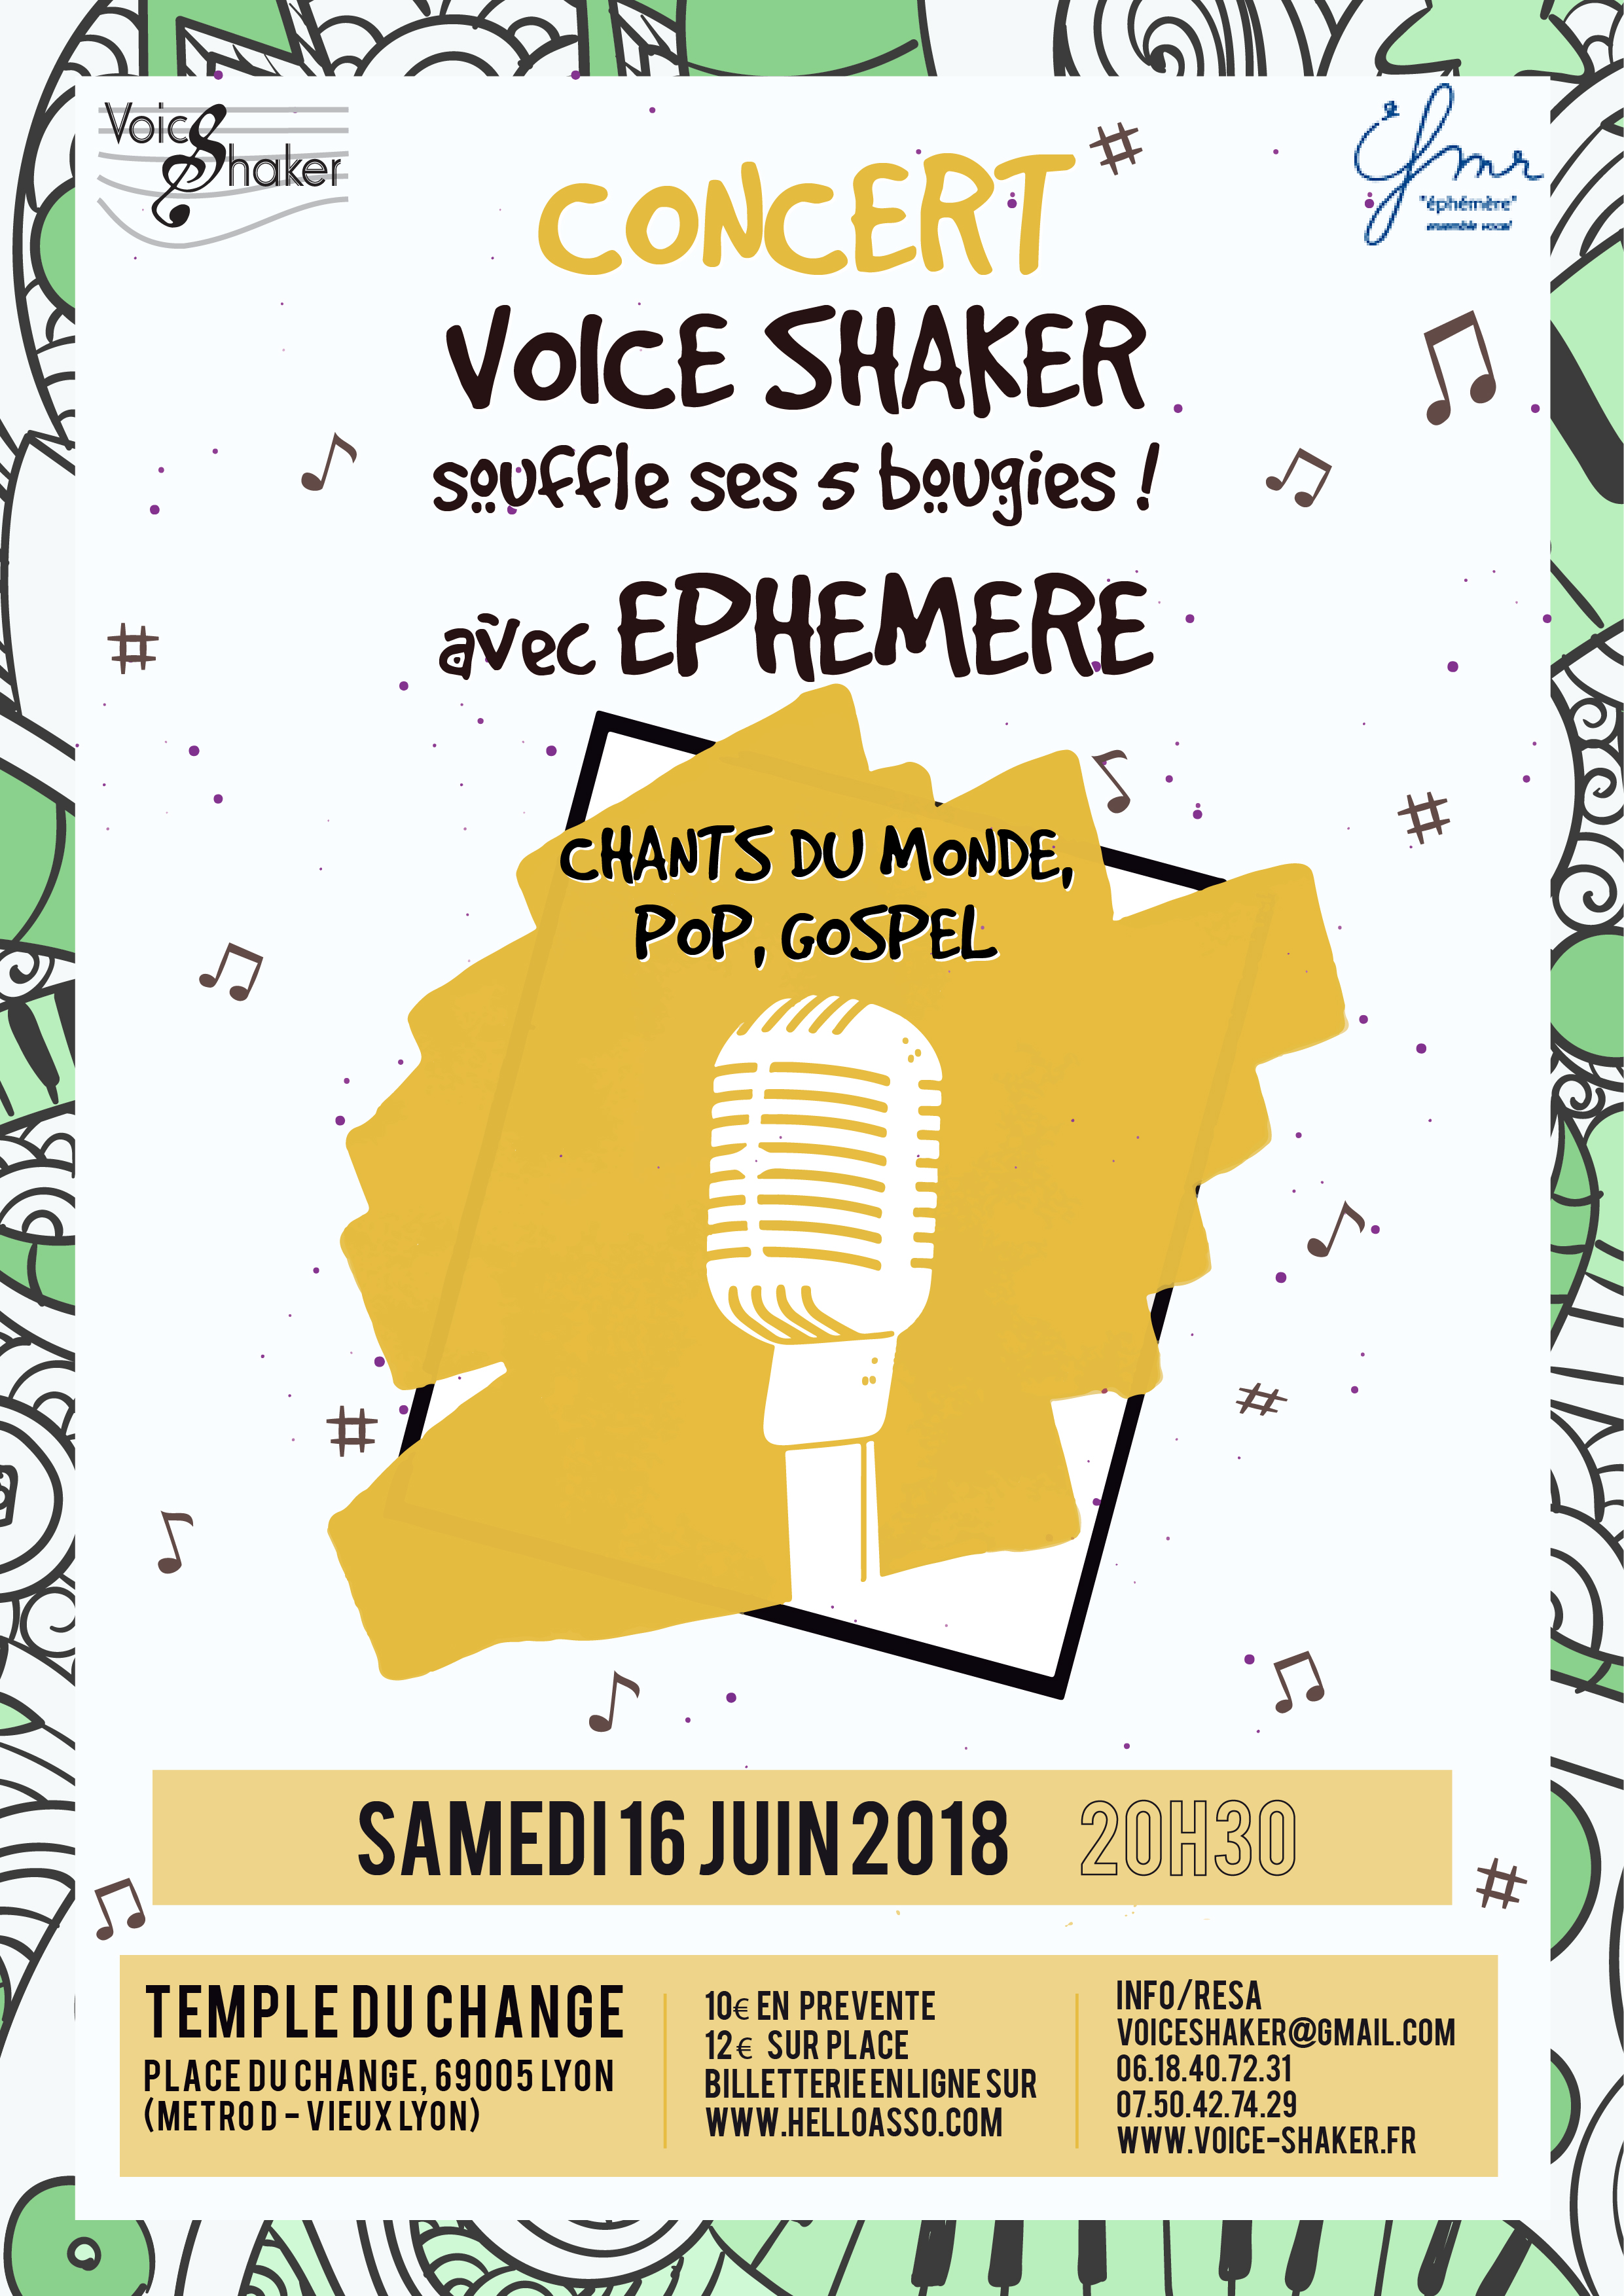 Concert le 16.06.18 / Voice Shaker souffle ces 5 bougies !